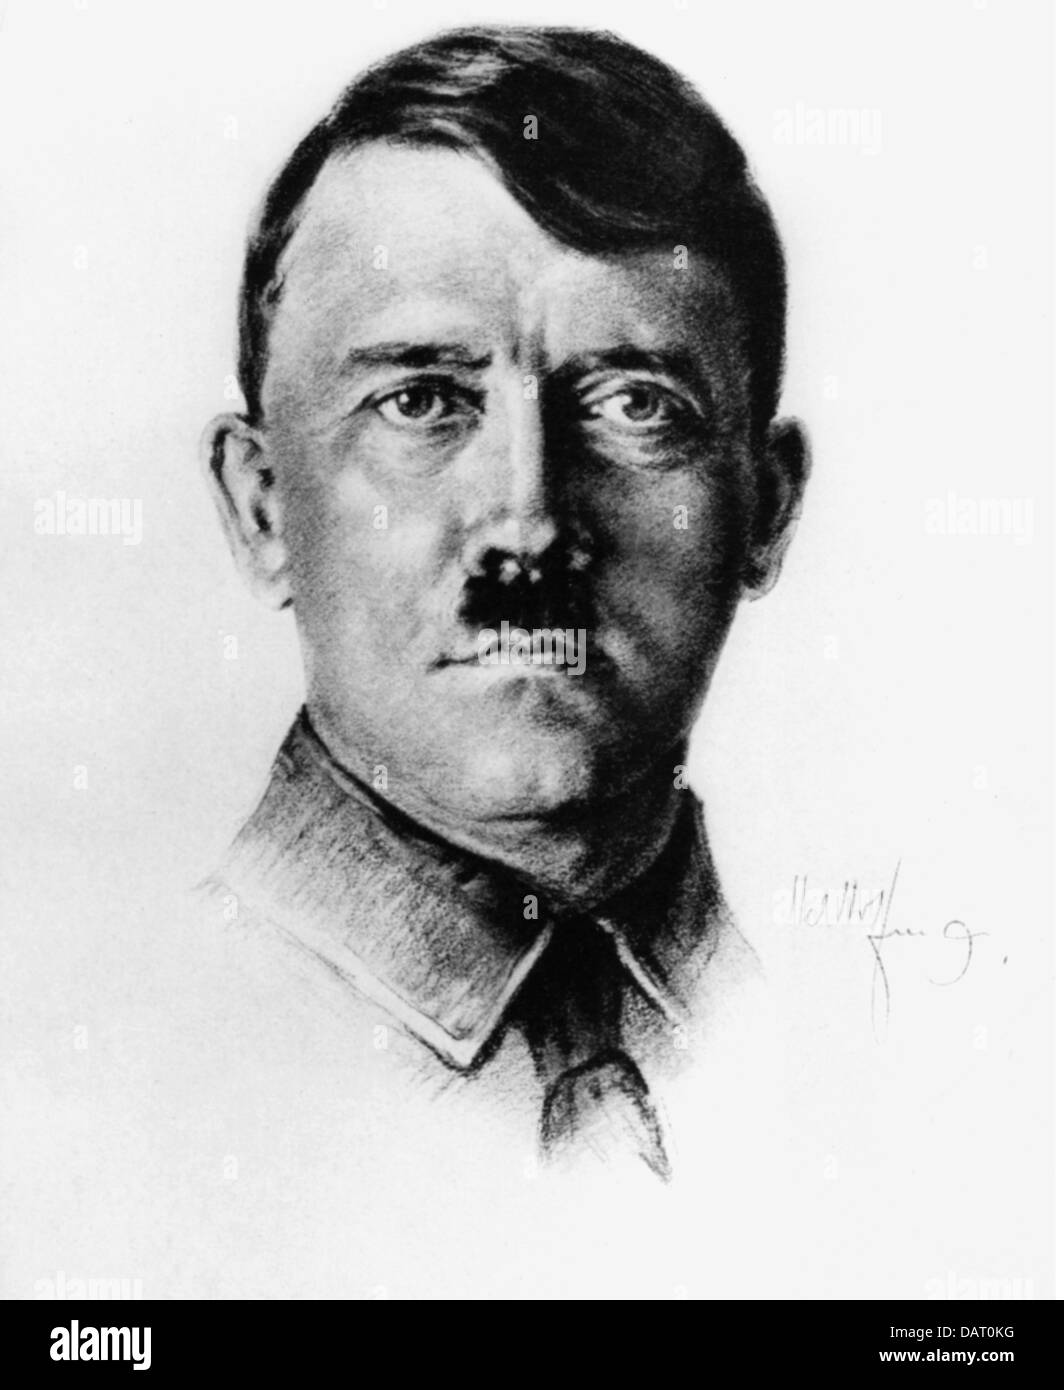 Hitler, Adolf, 20.4.1889 - 30.4.1945, politico tedesco (NSDAP), Cancelliere del Reich 30.1.1933 - 30.4.1945, ritratto con firma, disegno, 1930s, Foto Stock